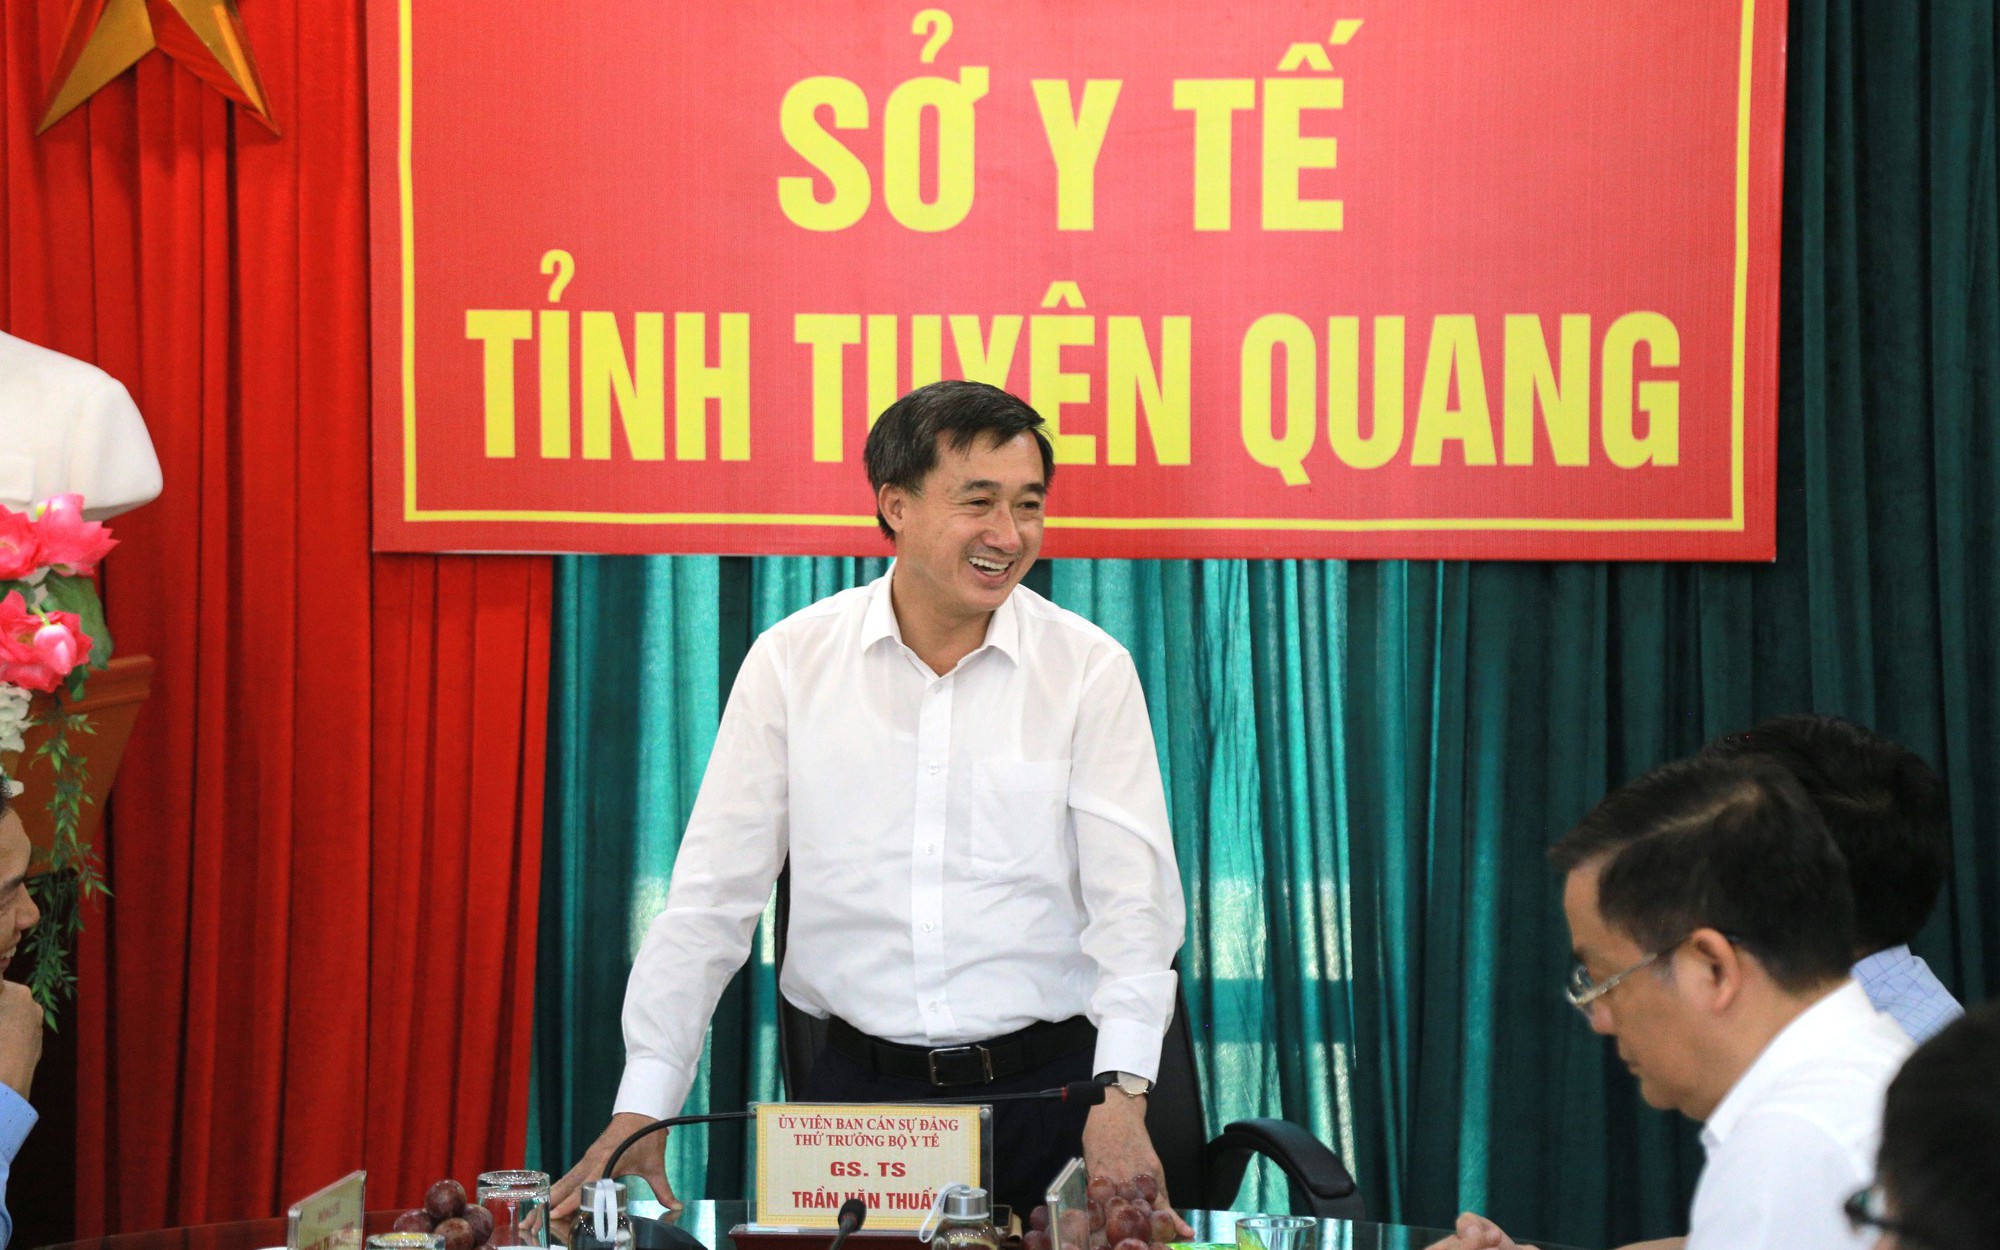 Thứ trưởng Trần Văn Thuấn: "Phát triển công tác xã hội trong ngành y tế giúp nâng cao công tác bảo vệ, chăm sóc sức khỏe nhân dân"